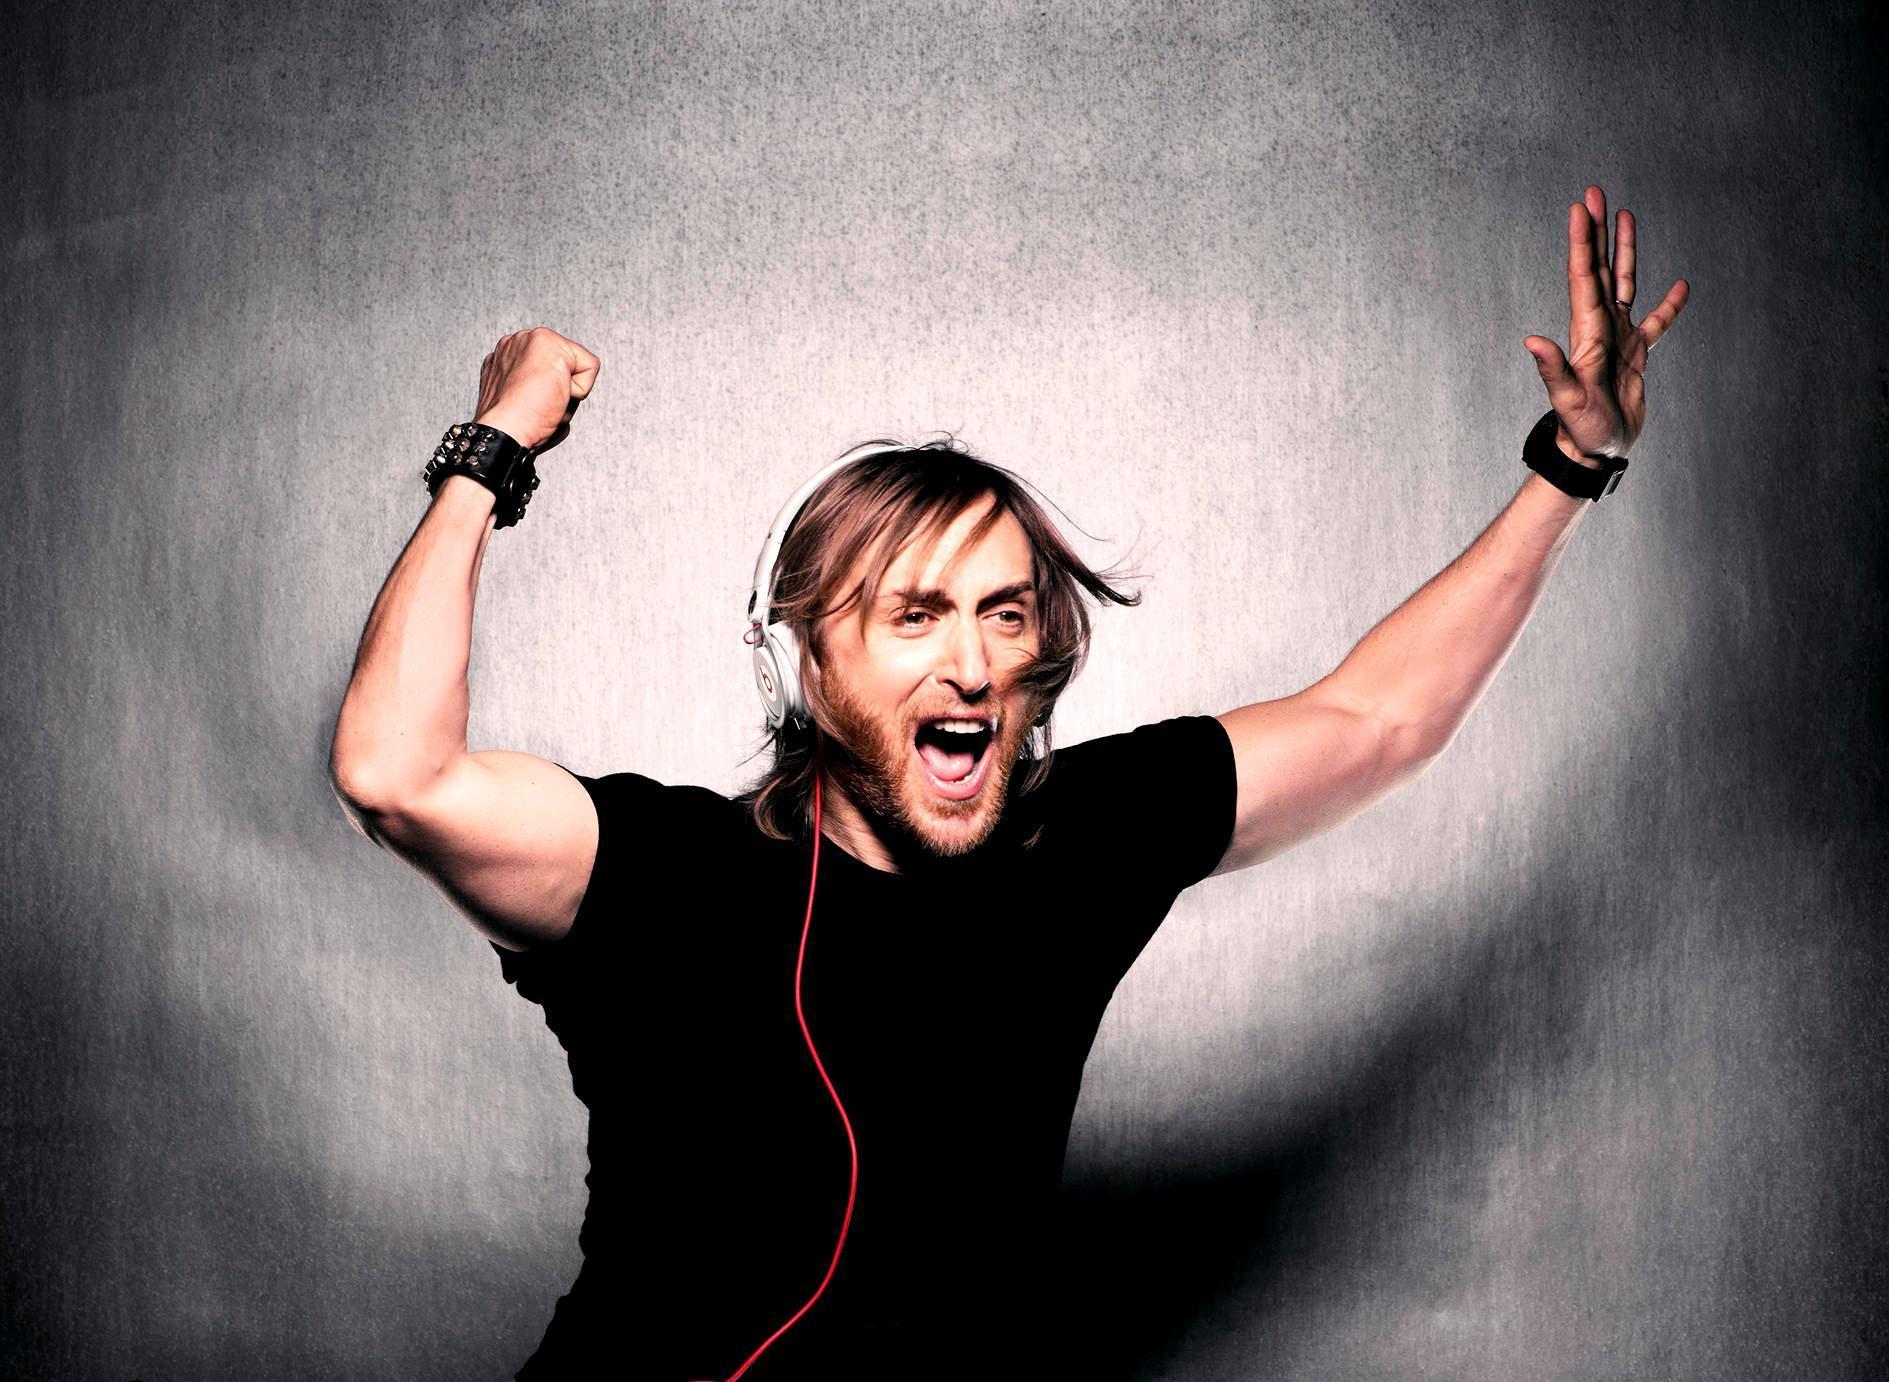 David Guetta HD wallpaper • PoPoPics.com